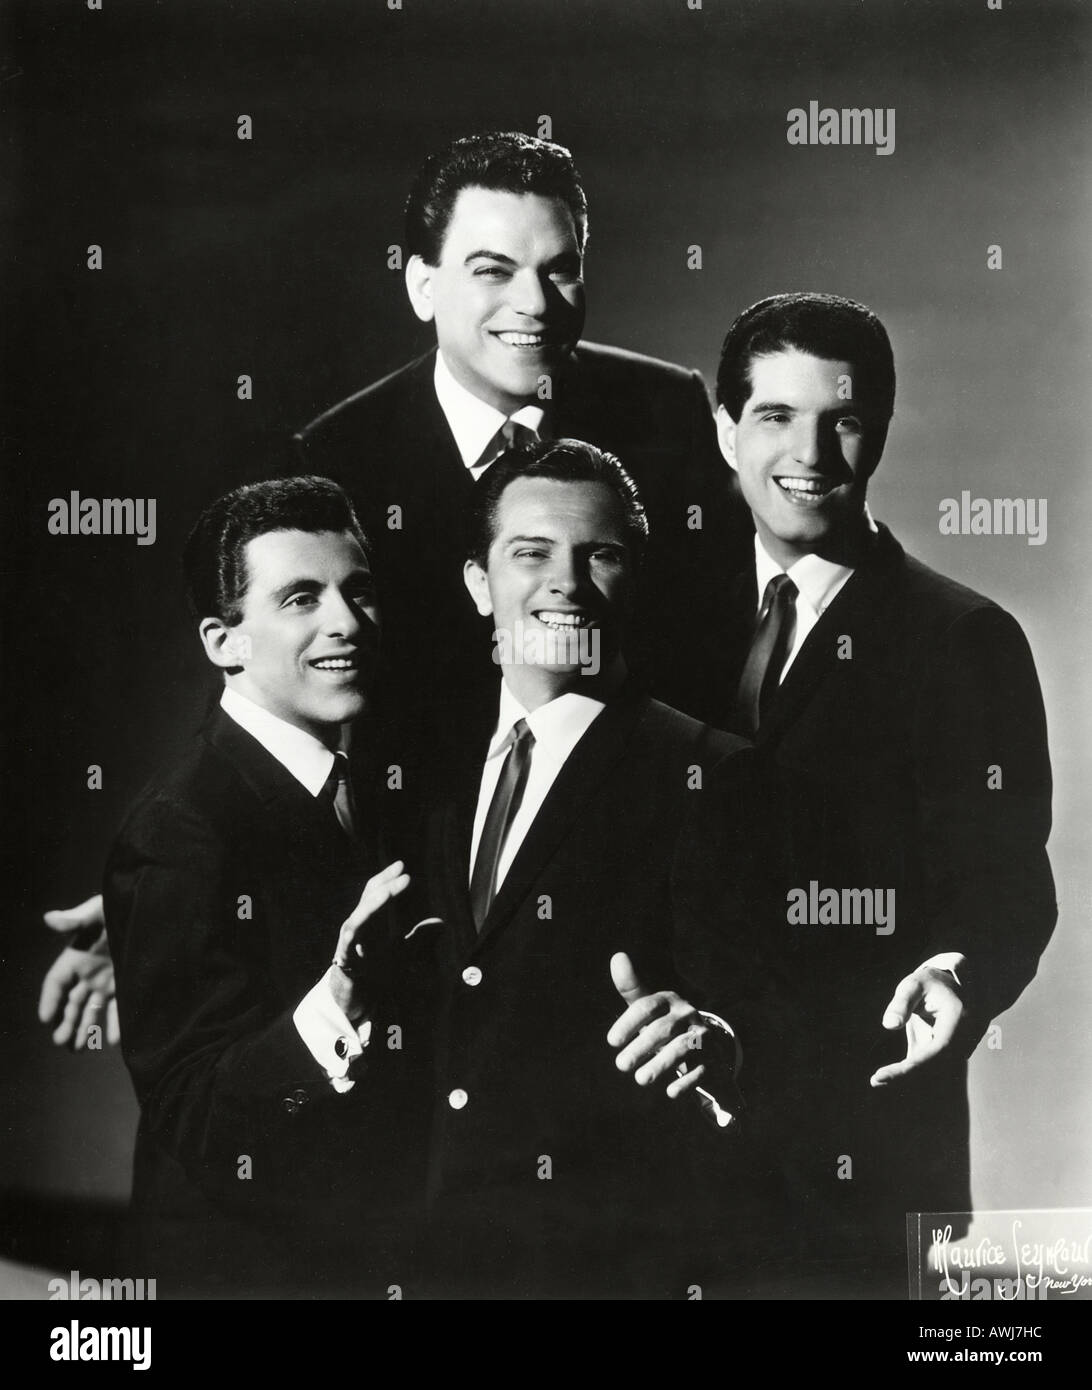 VIER JAHRESZEITEN Werbefoto der US-Gesangsgruppe über 1966 Mit Frankie Valli auf der linken Seite Stockfoto